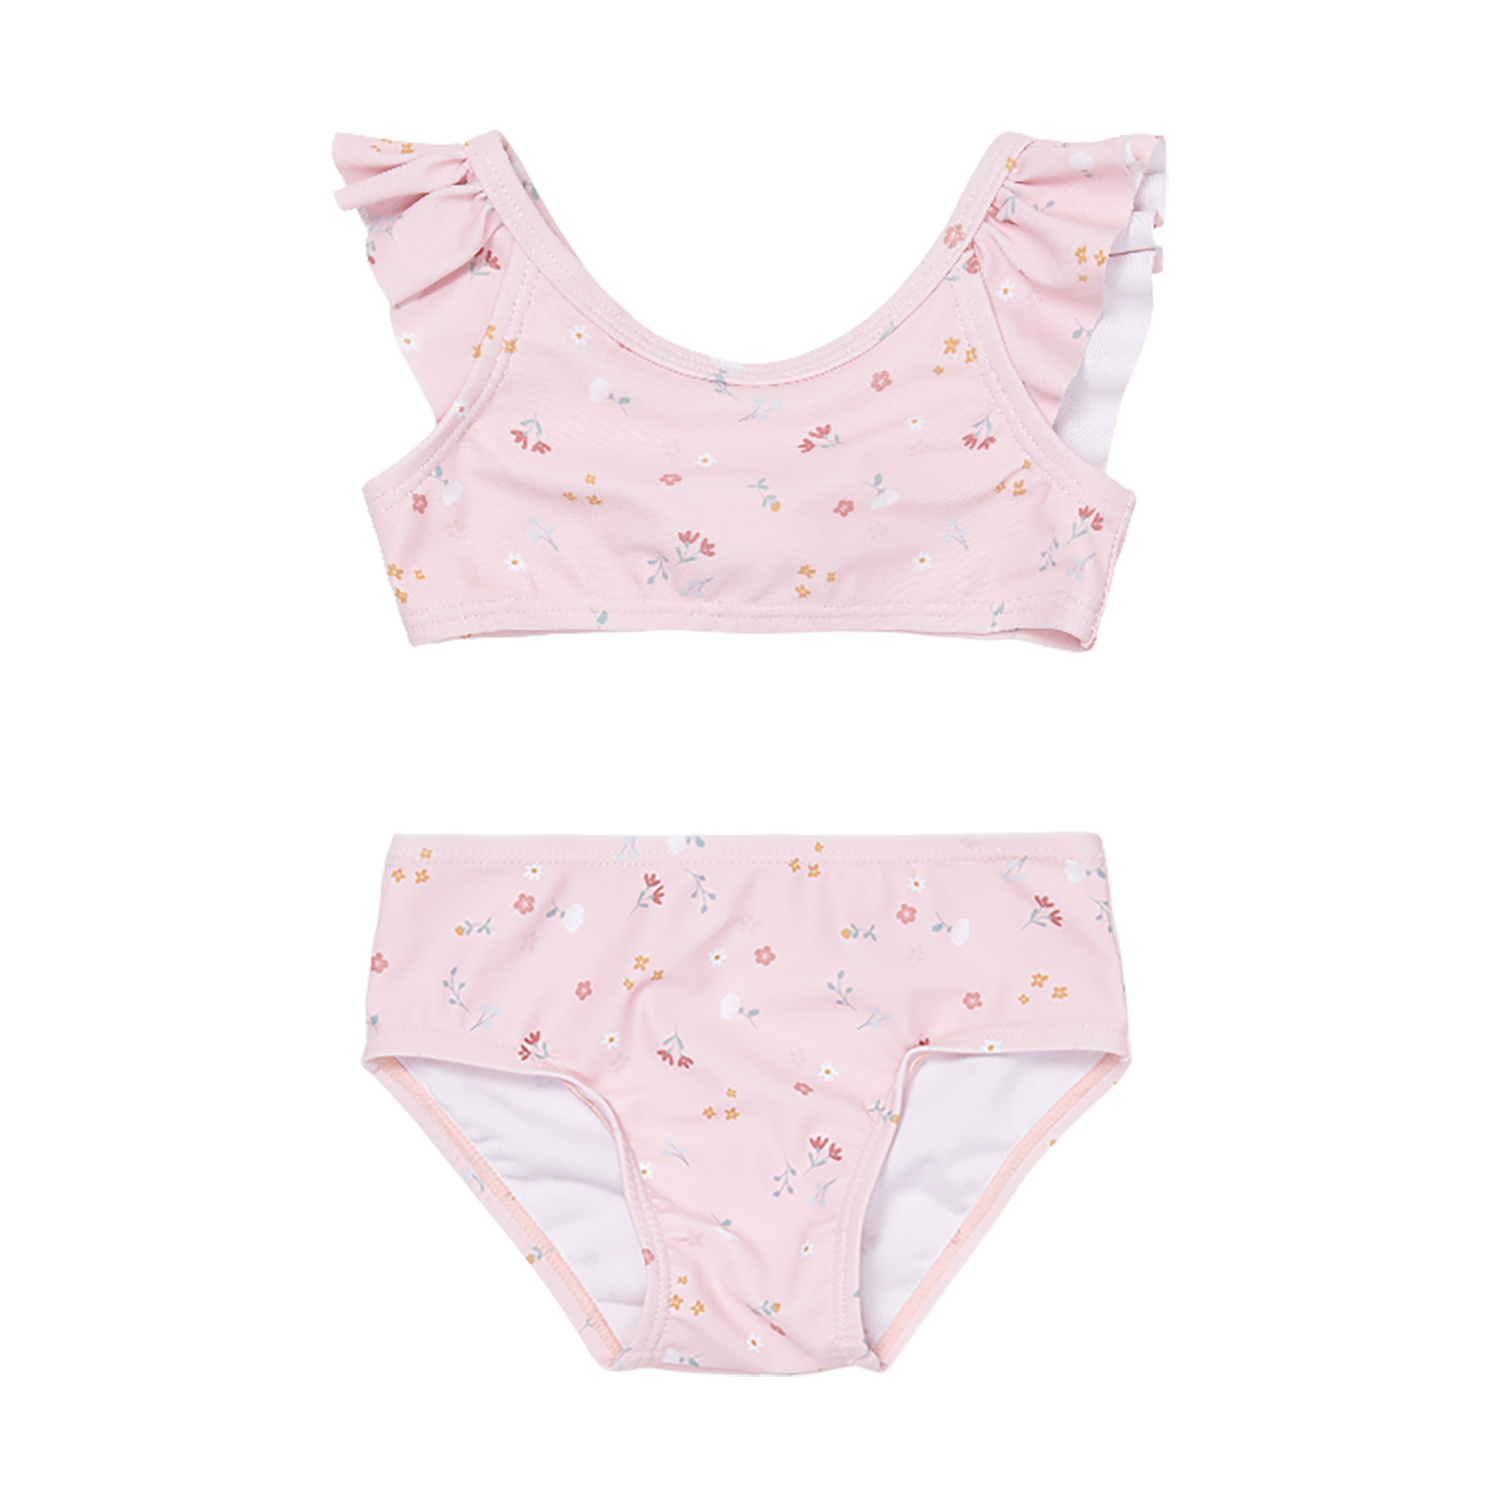 Bikini mit Volants / Rüschen Little pink Flowers rosa (Gr. 86/92)